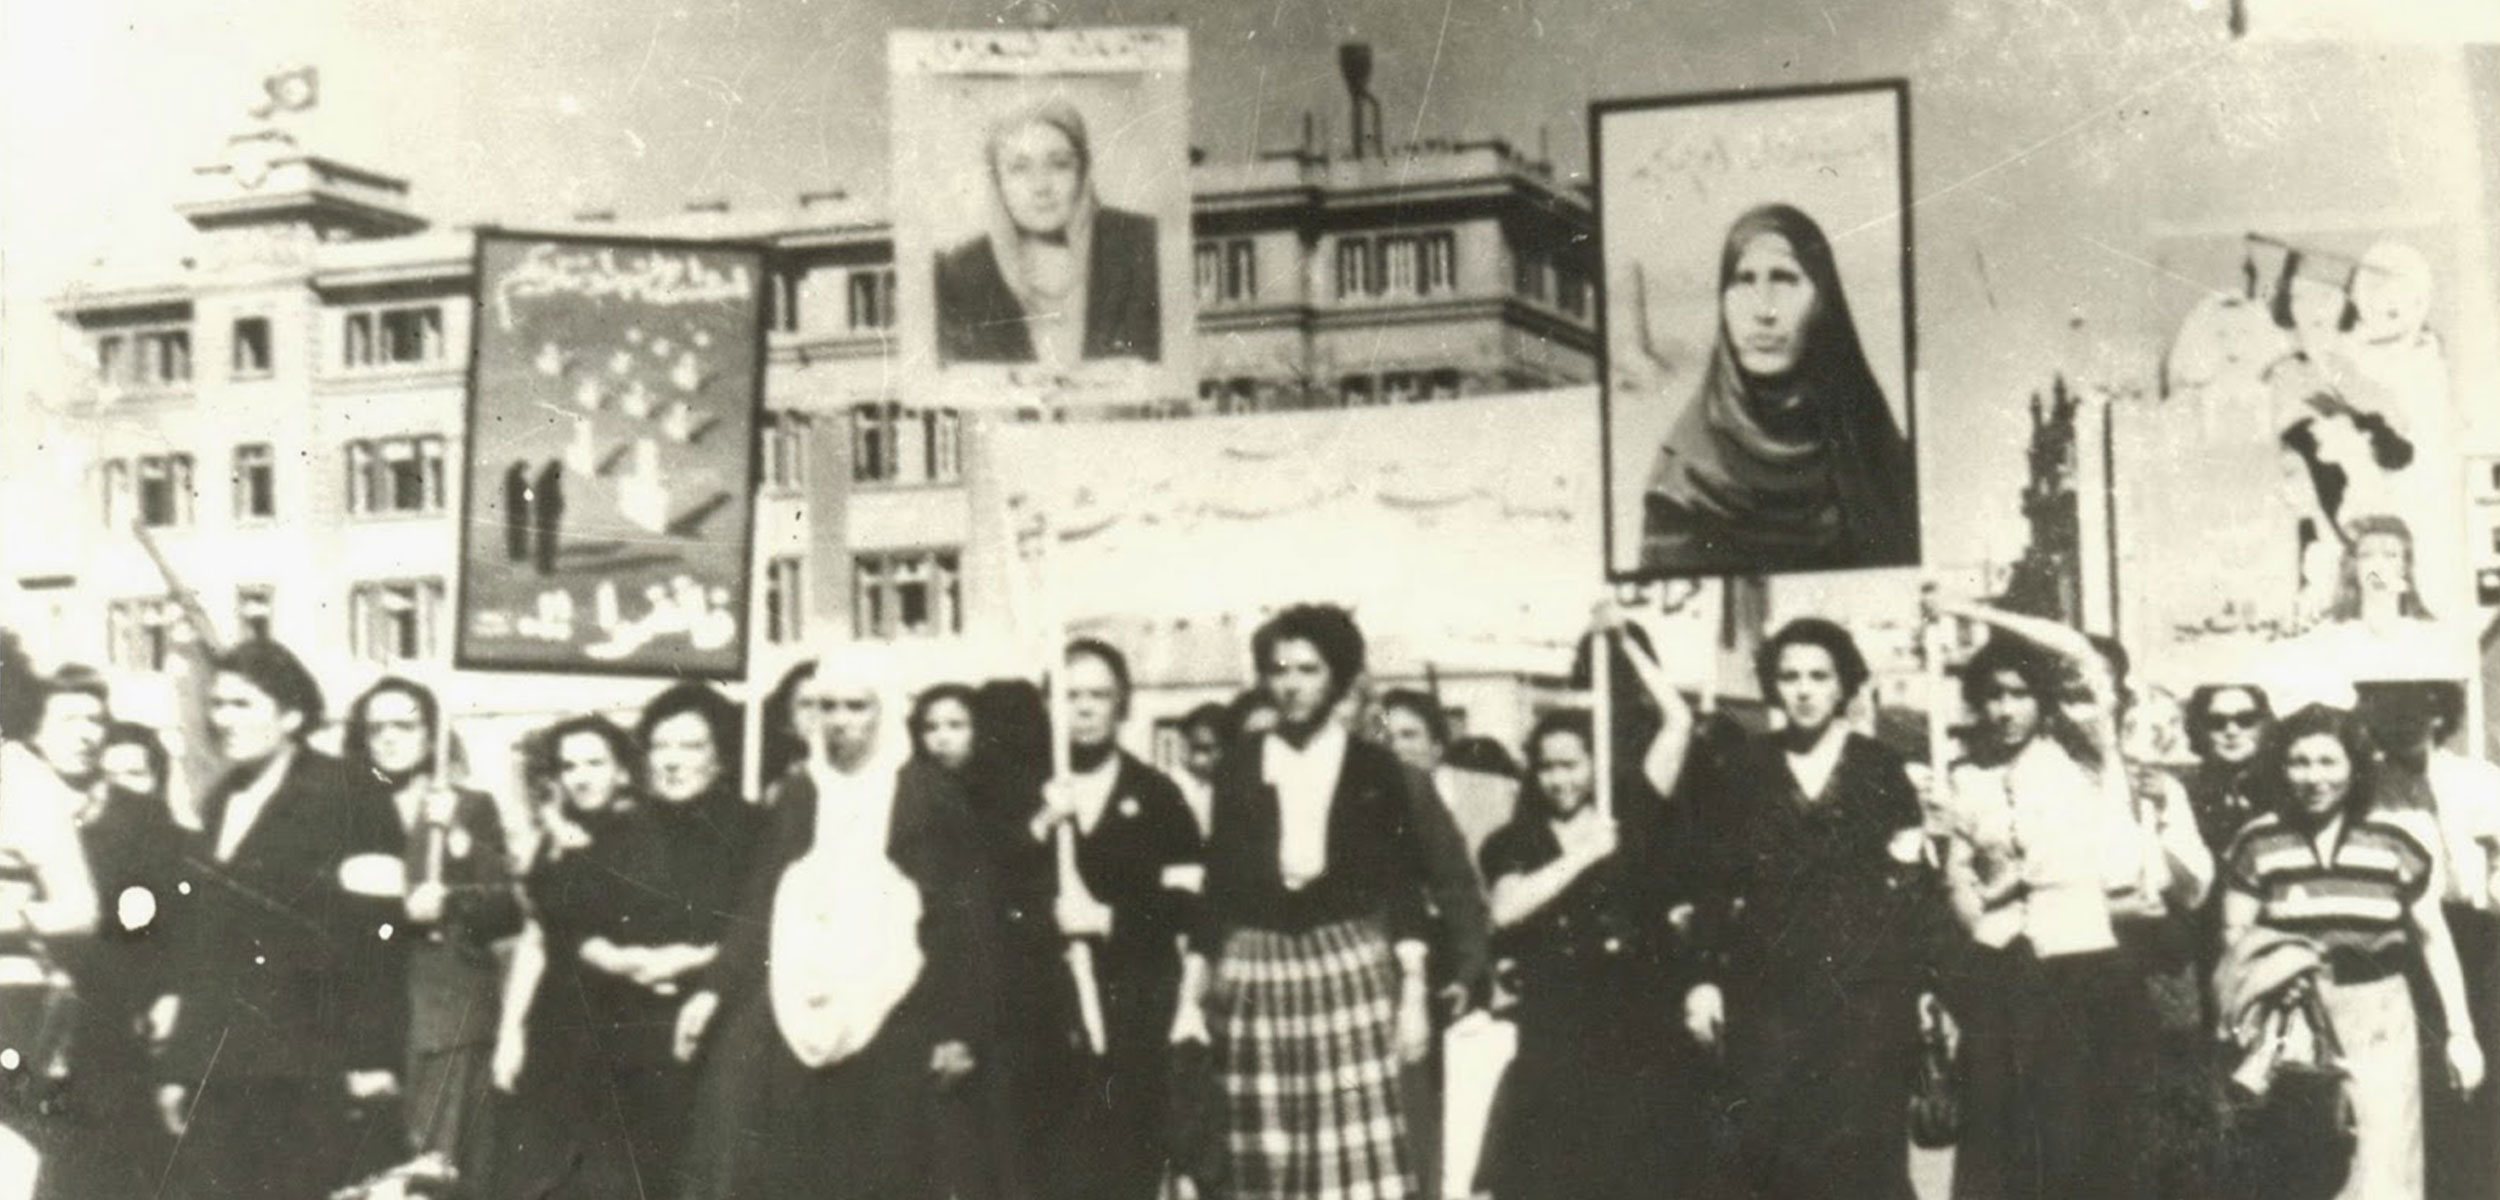 المرأة العربيّة في 100 عام: من قضية تحرر وطني إلى جدل فقهي